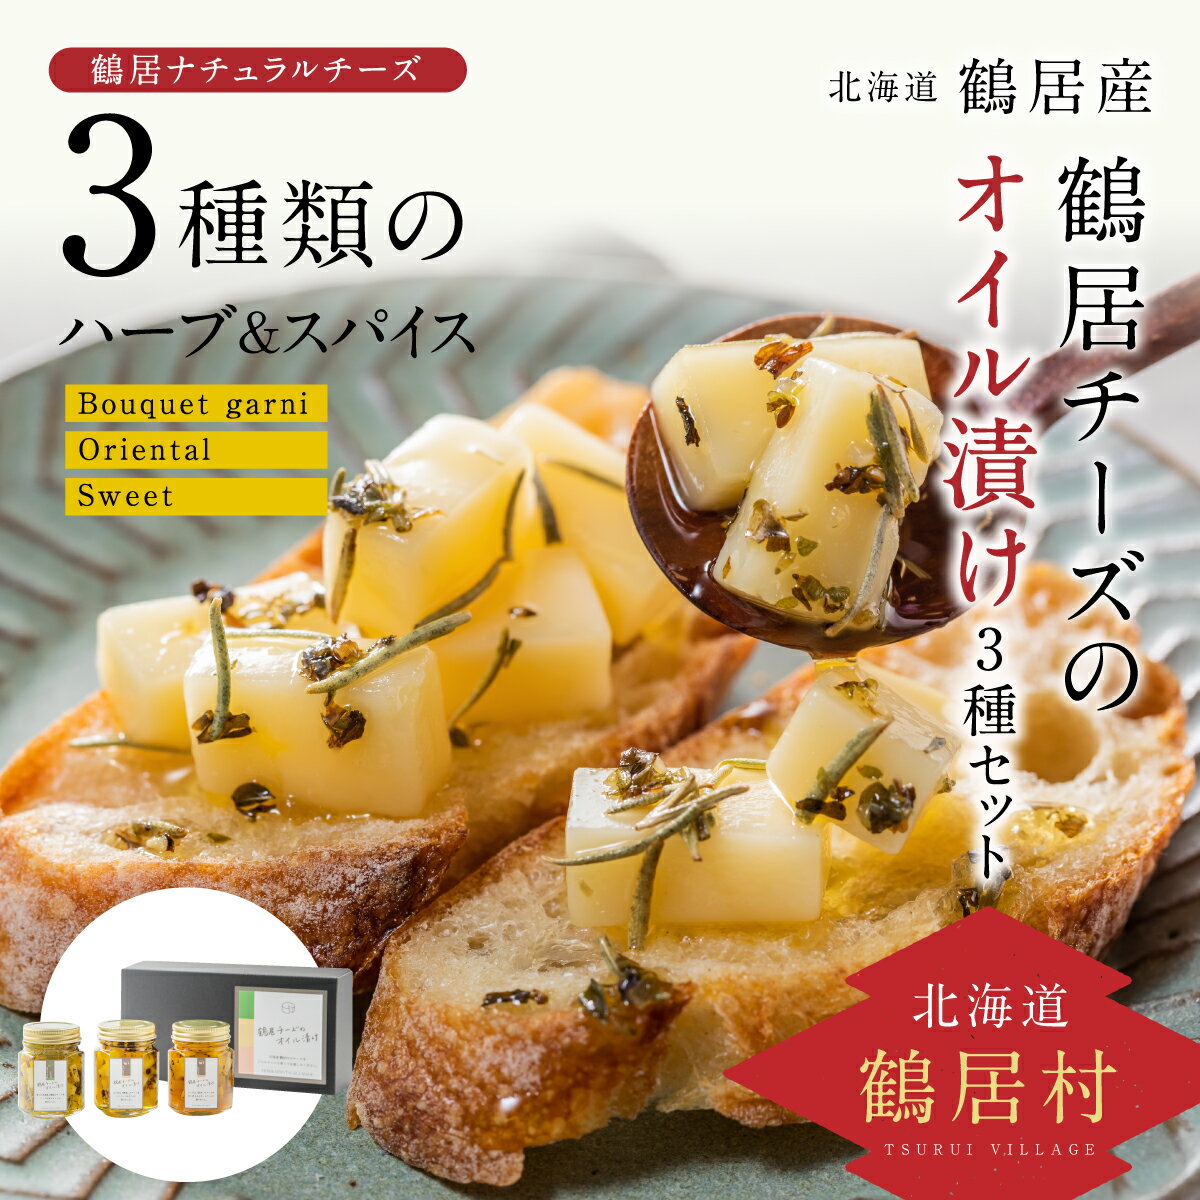 北海道 鶴居村 チーズ の オイル 漬け 3種セット 鶴居村大人気のチーズを使用 オリーブオイル はちみつ バジル ローズマリー ひまわりオイル 楽天スーパーSALE